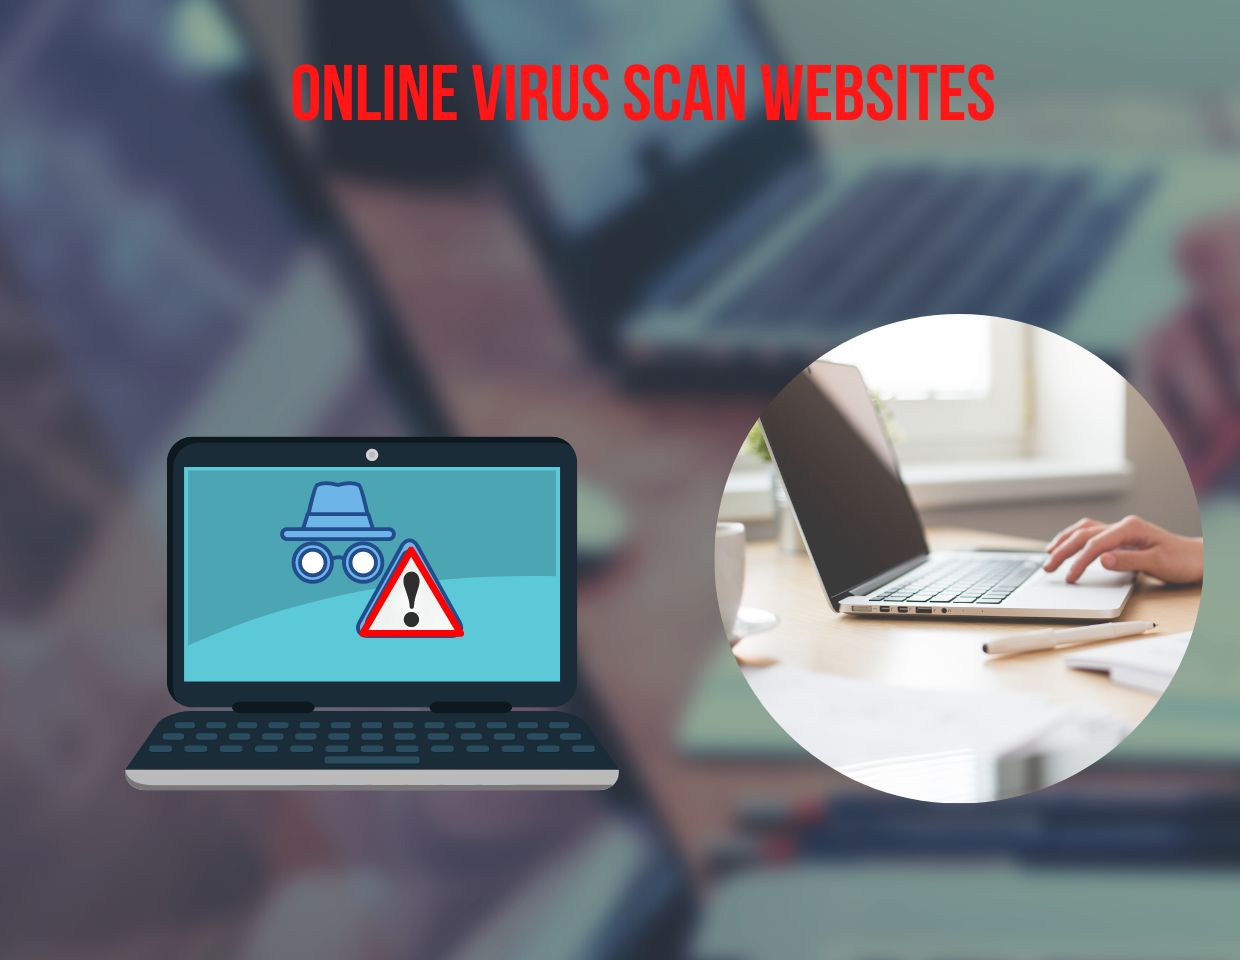 Online Virus Scan Websites